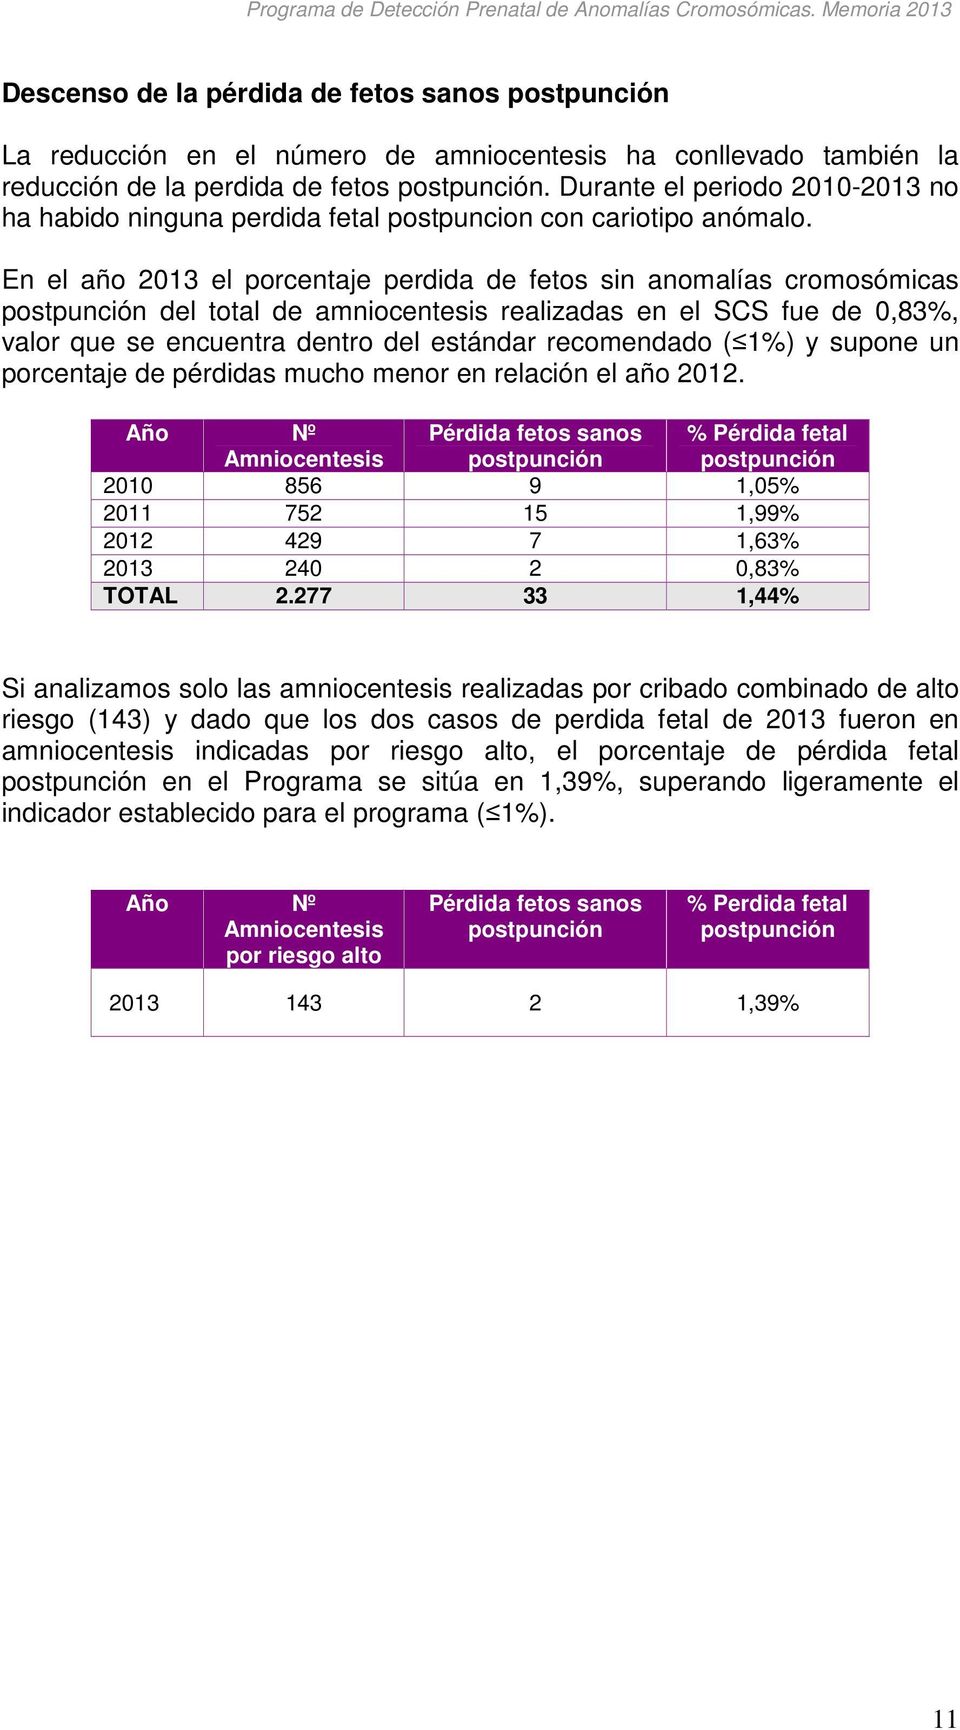 En el año 2013 el porcentaje perdida de fetos sin anomalías cromosómicas postpunción del total de amniocentesis realizadas en el SCS fue de 0,83%, valor que se encuentra dentro del estándar